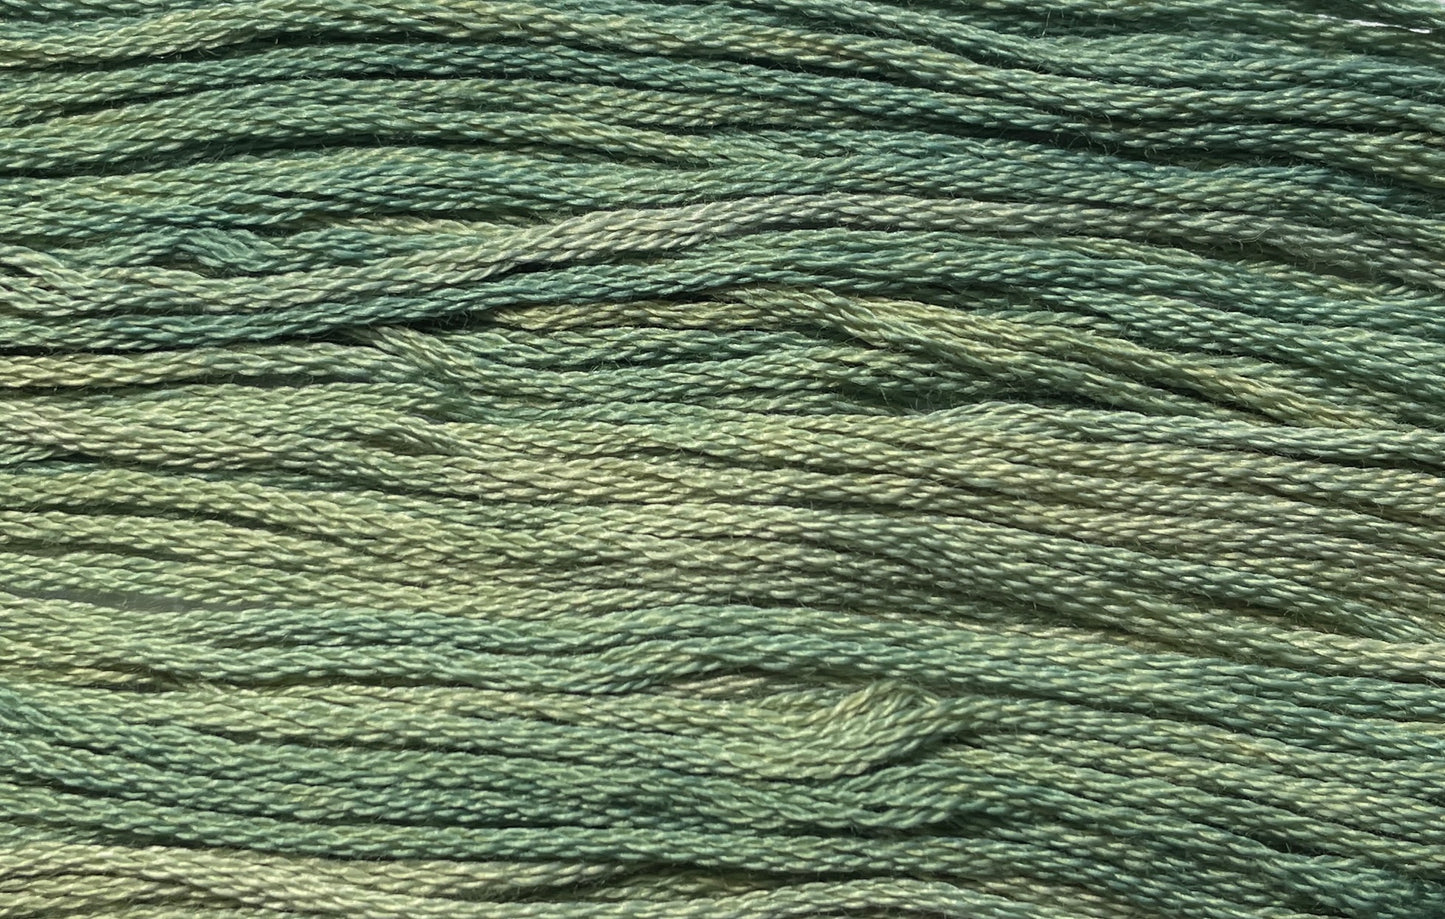 Mountain Mist - Gentle Arts Cotton Thread - 5 yard Skein - Cross Stitch Floss, Thread & Floss, Thread & Floss, The Crafty Grimalkin - A Cross Stitch Store